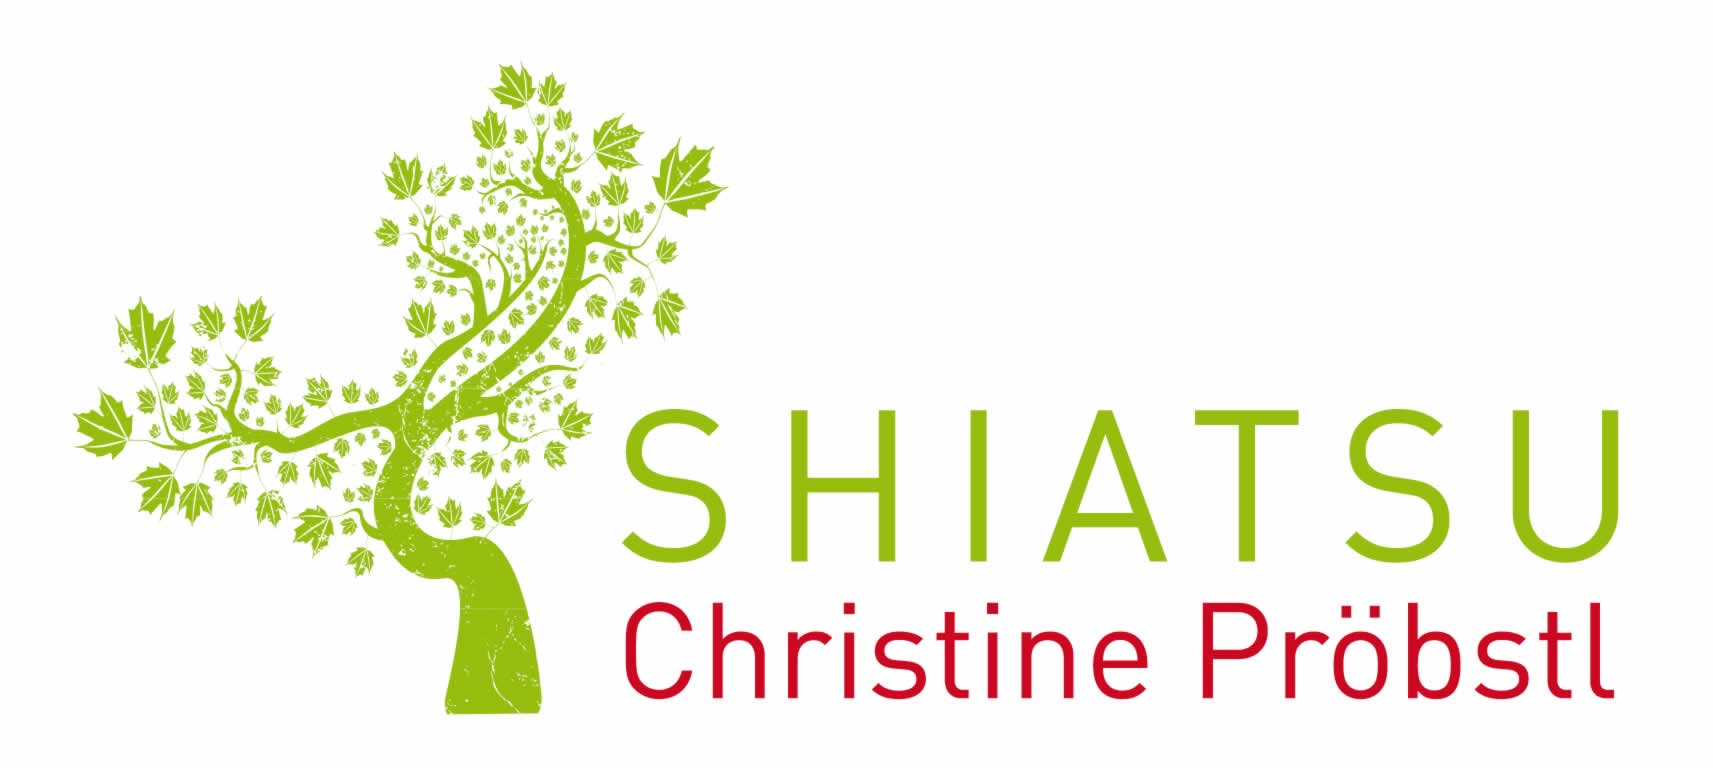 Logo Shiatsu Christine Pröbstl